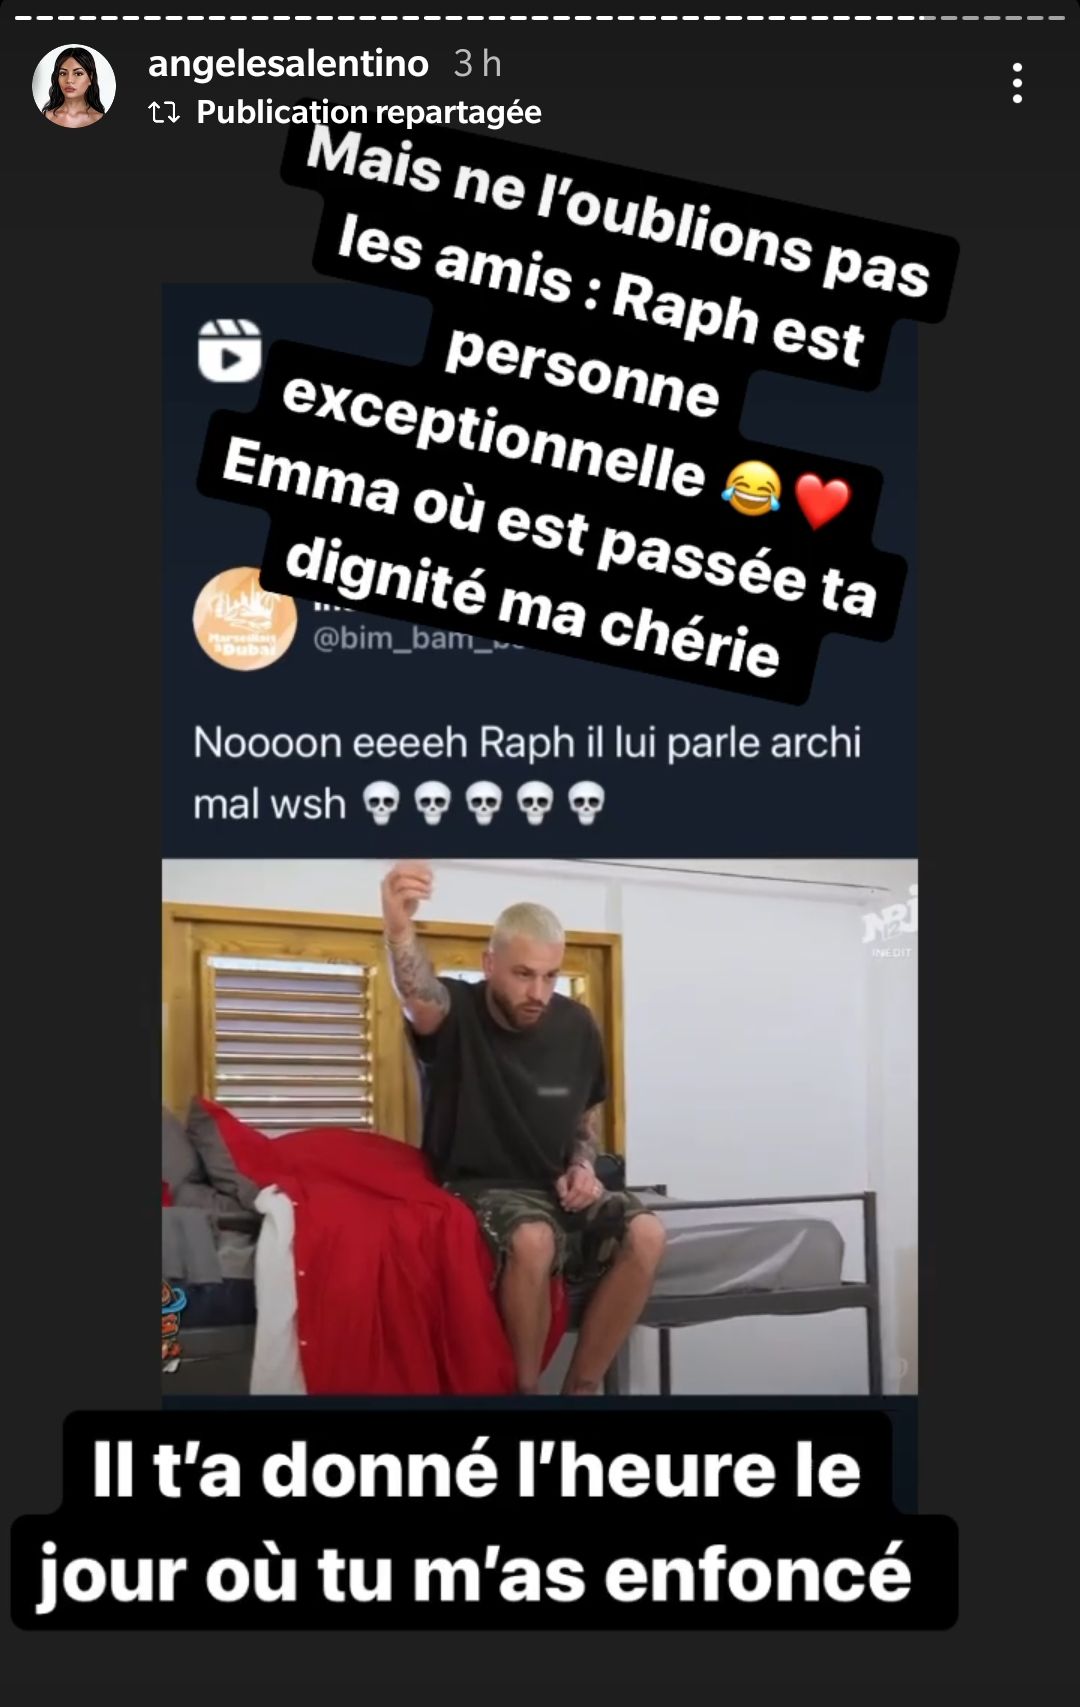  Angèle tacle Raphaël et Emma @Instagram